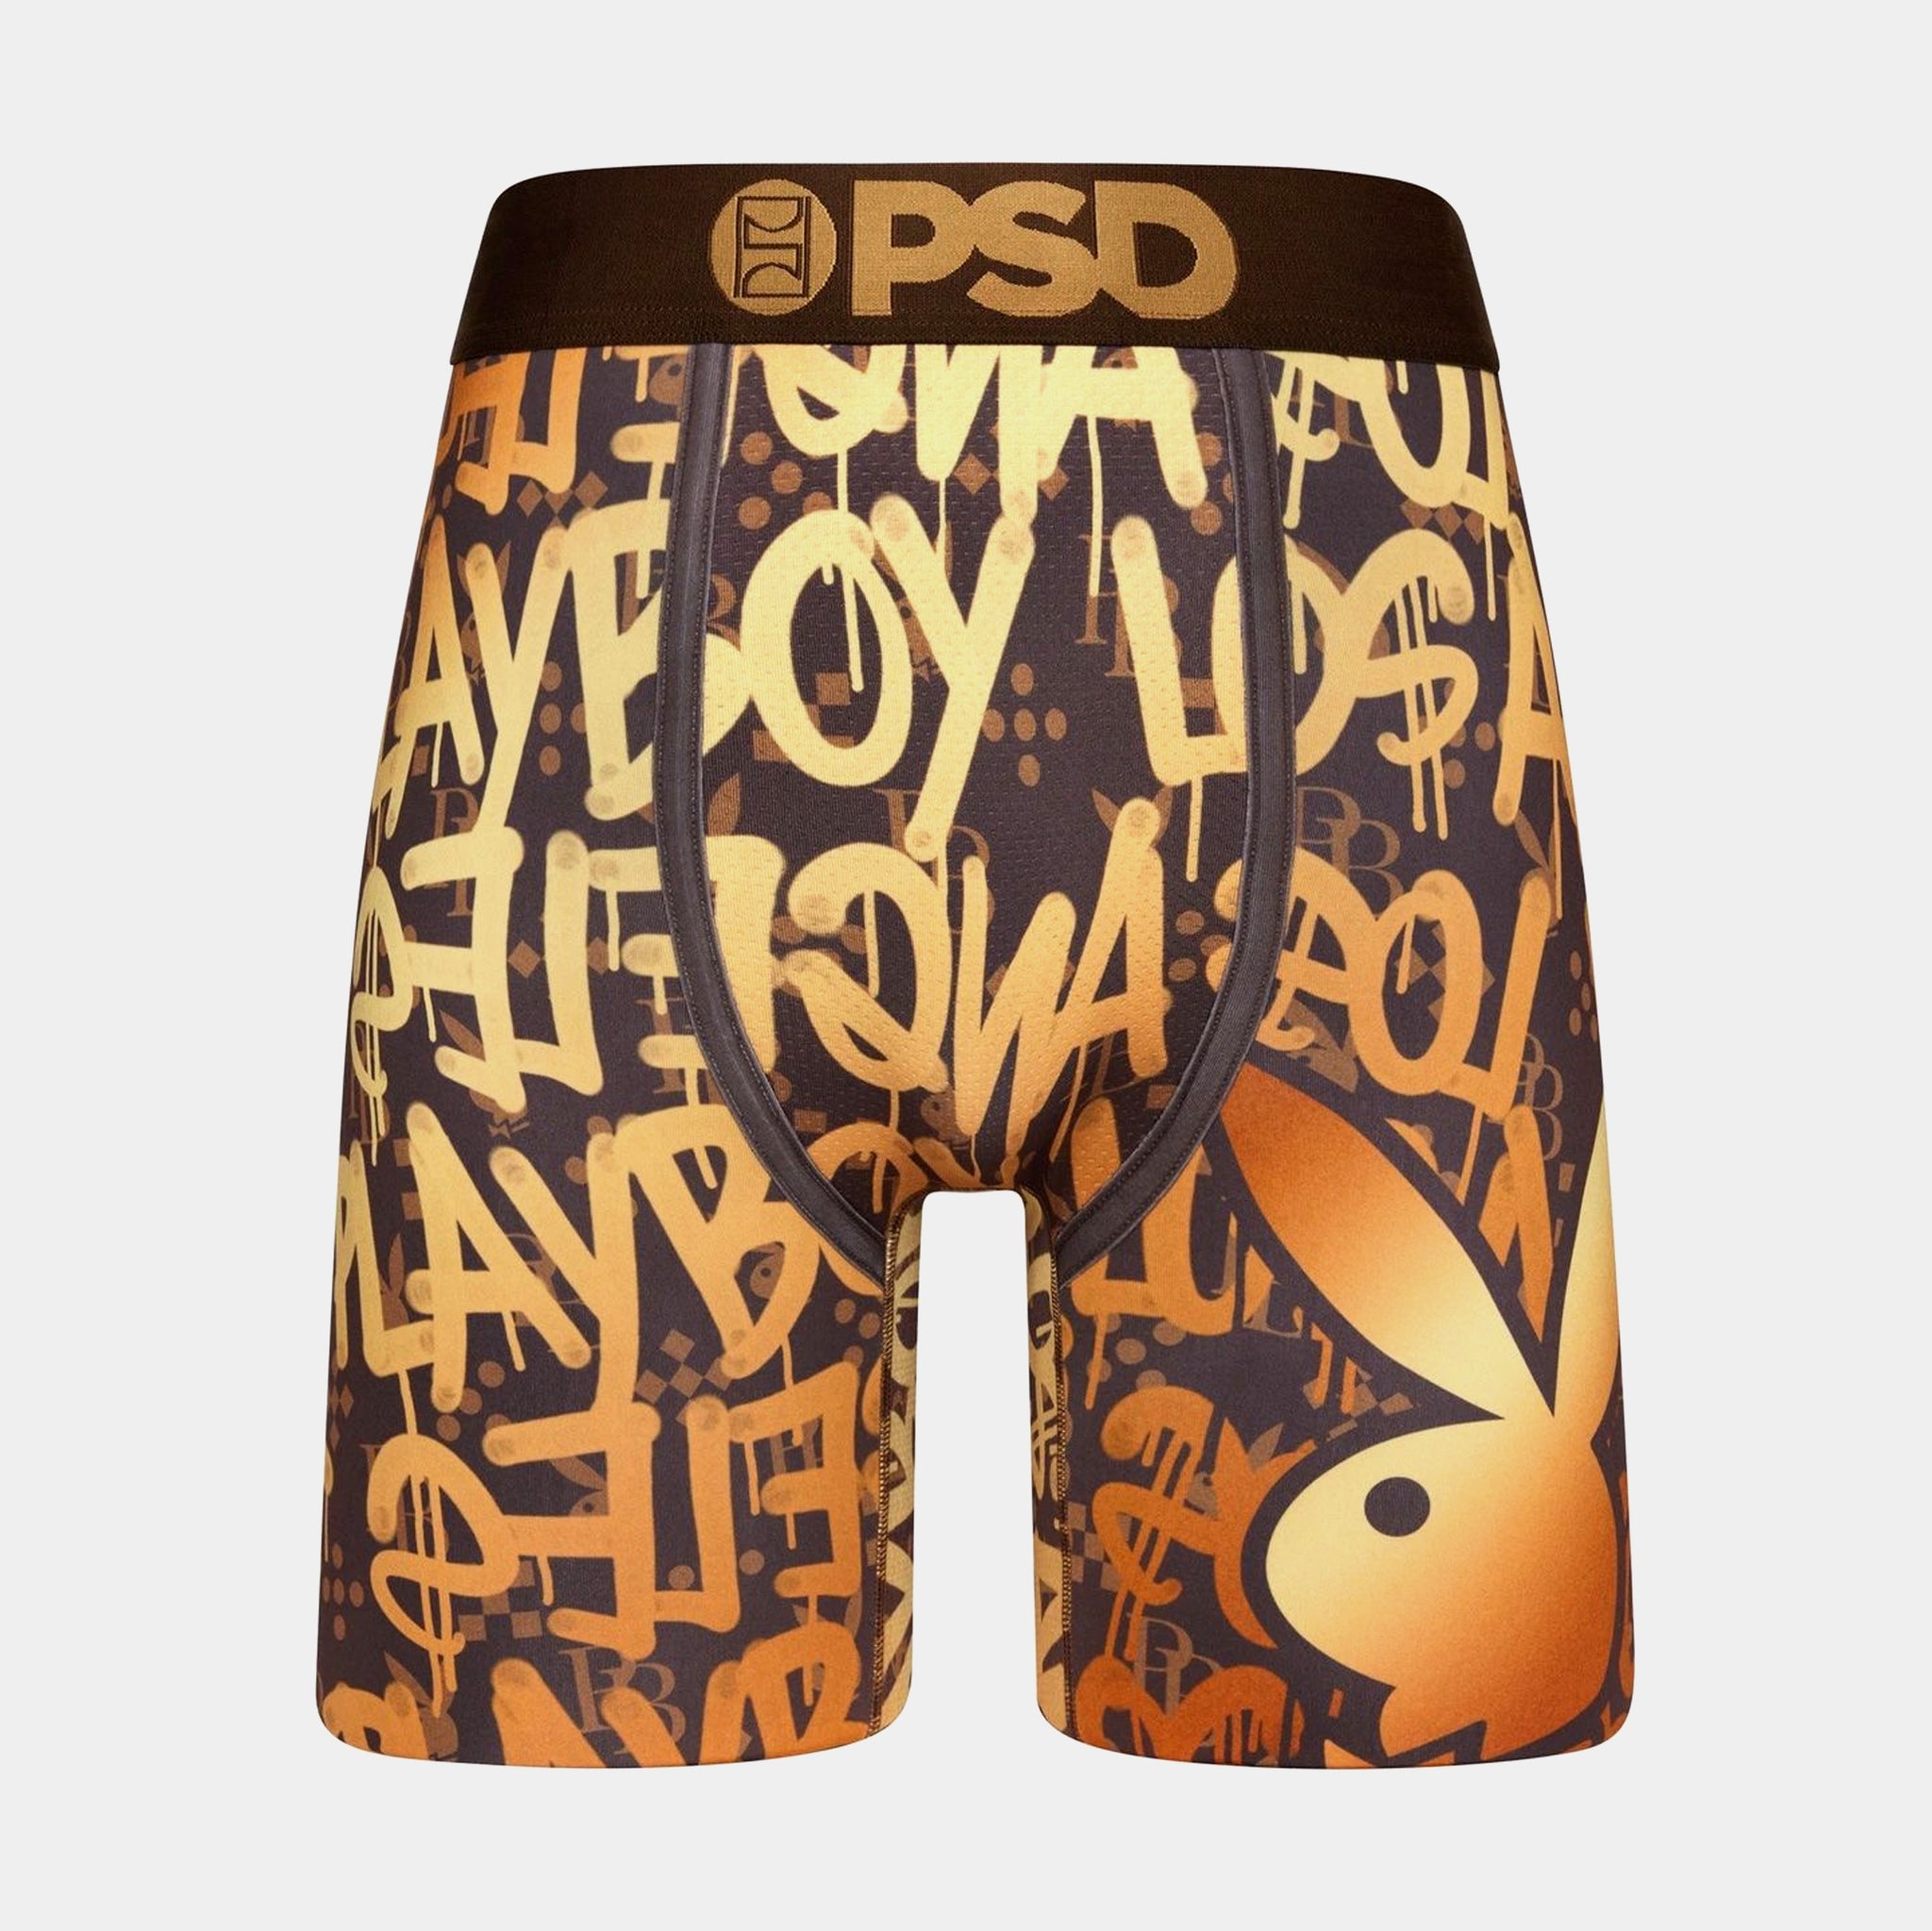  PSD Men's Playboy Life Boxer Briefs, Multi, S